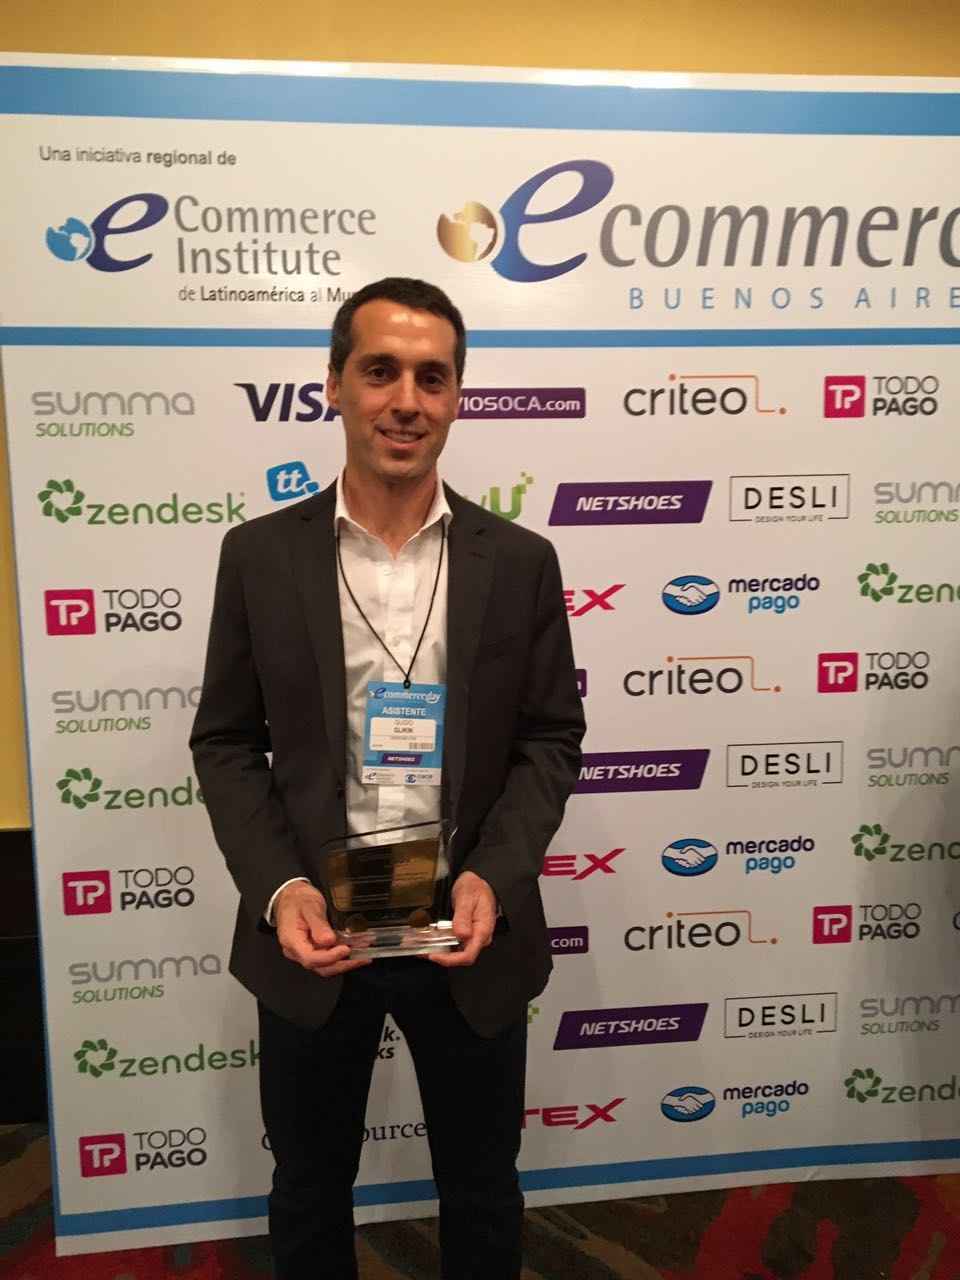 Portada de Despegar.com premiada por cuarto año consecutivo en los eCommerce Awards